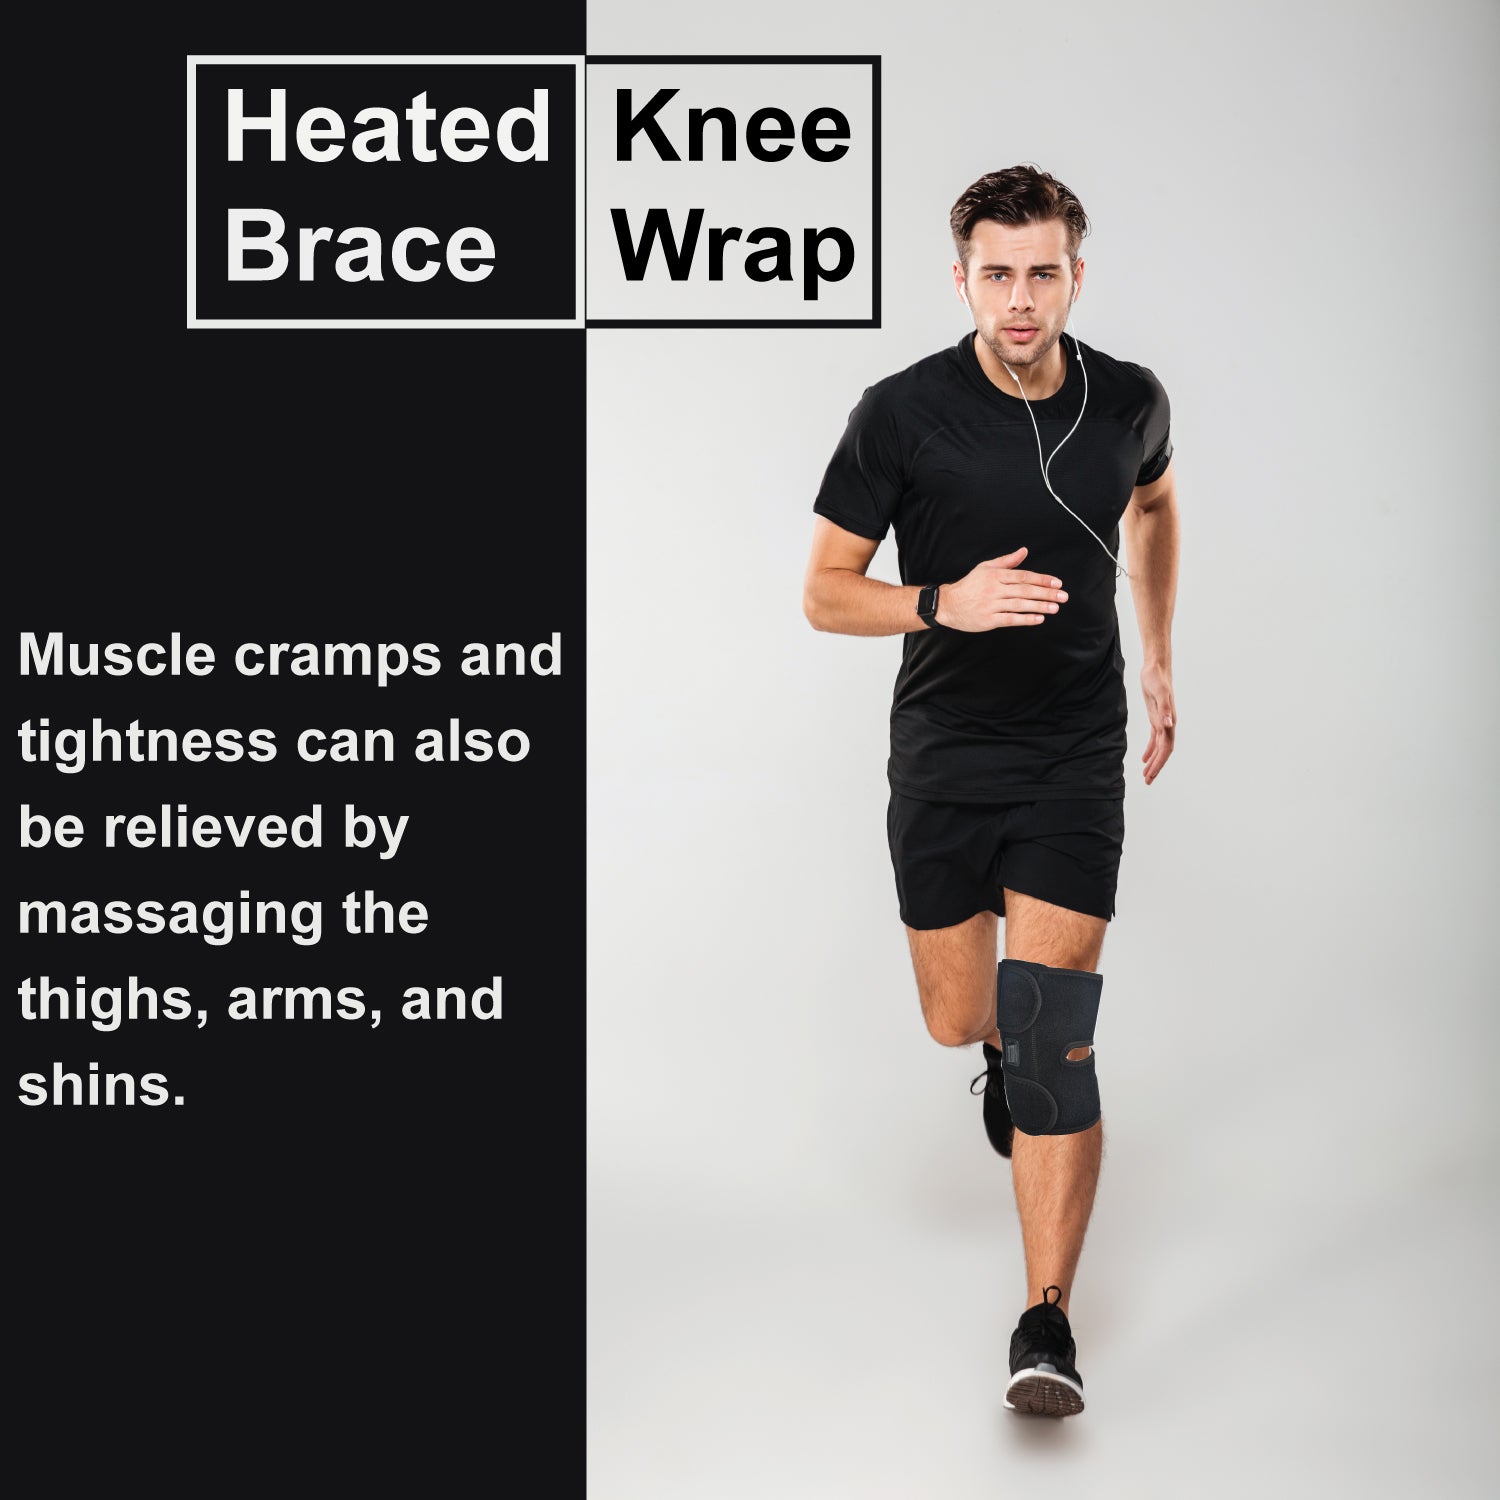 Heated Knee Brace